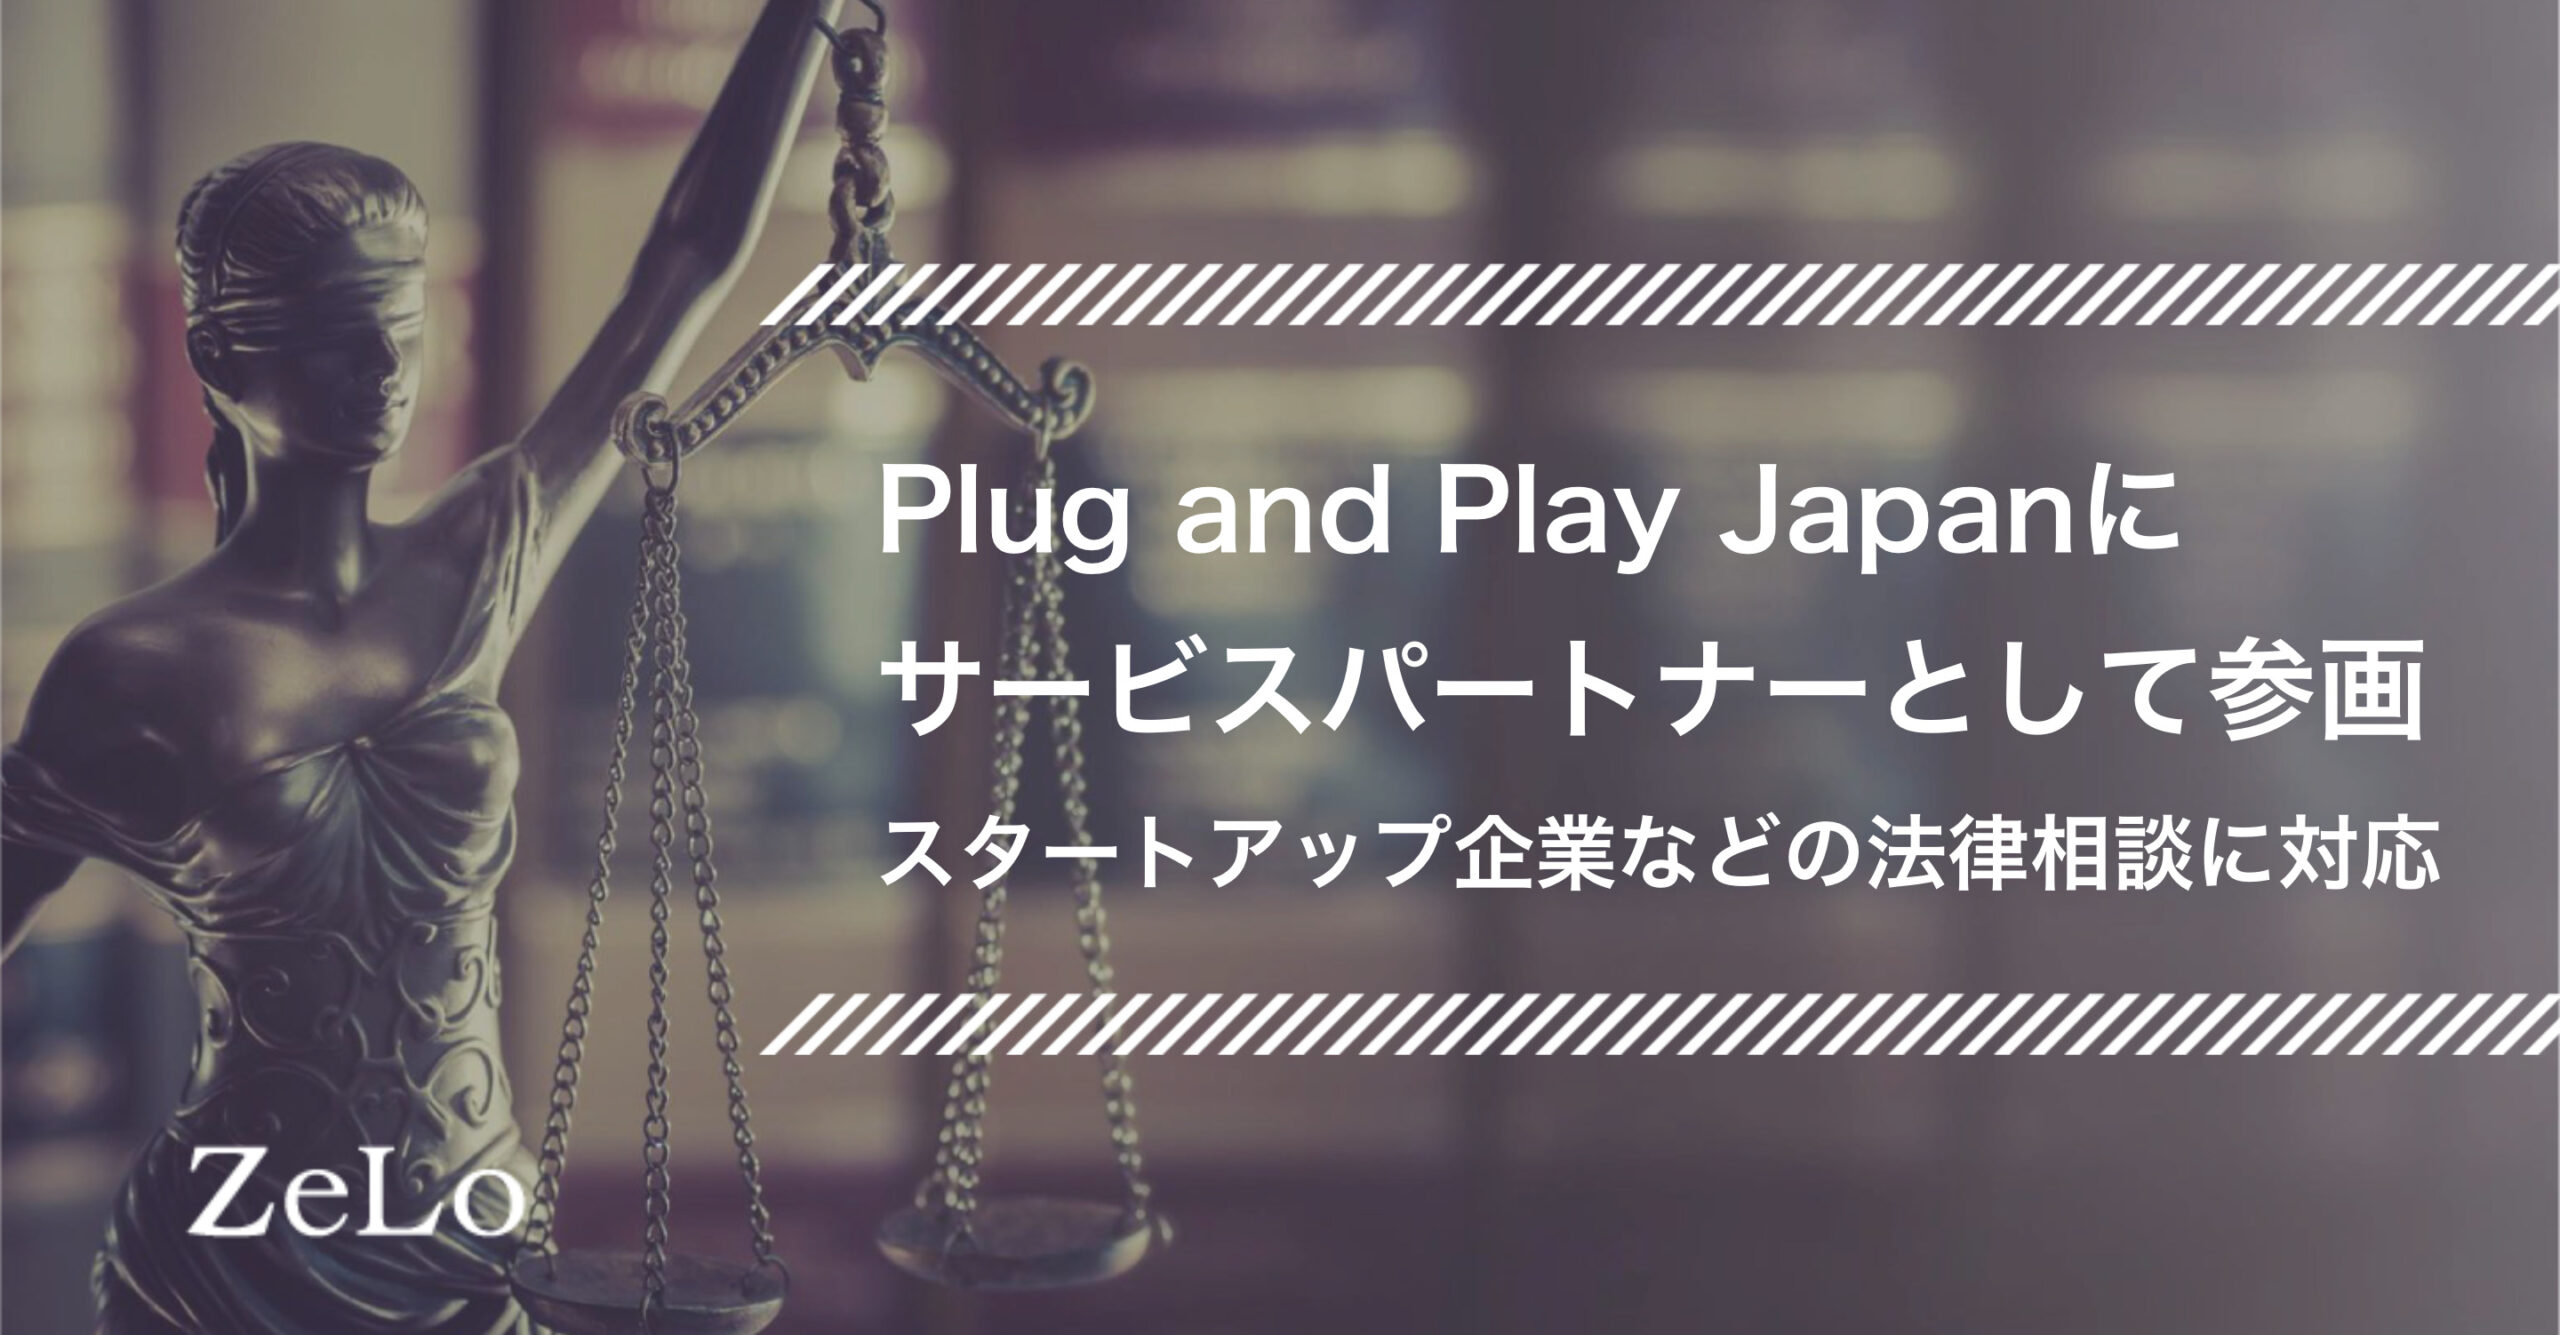 当事務所がPlug and Play Japanにサービスパートナーとして参画、スタートアップ企業などの法律相談に対応 |  法律事務所ZeLo・外国法共同事業